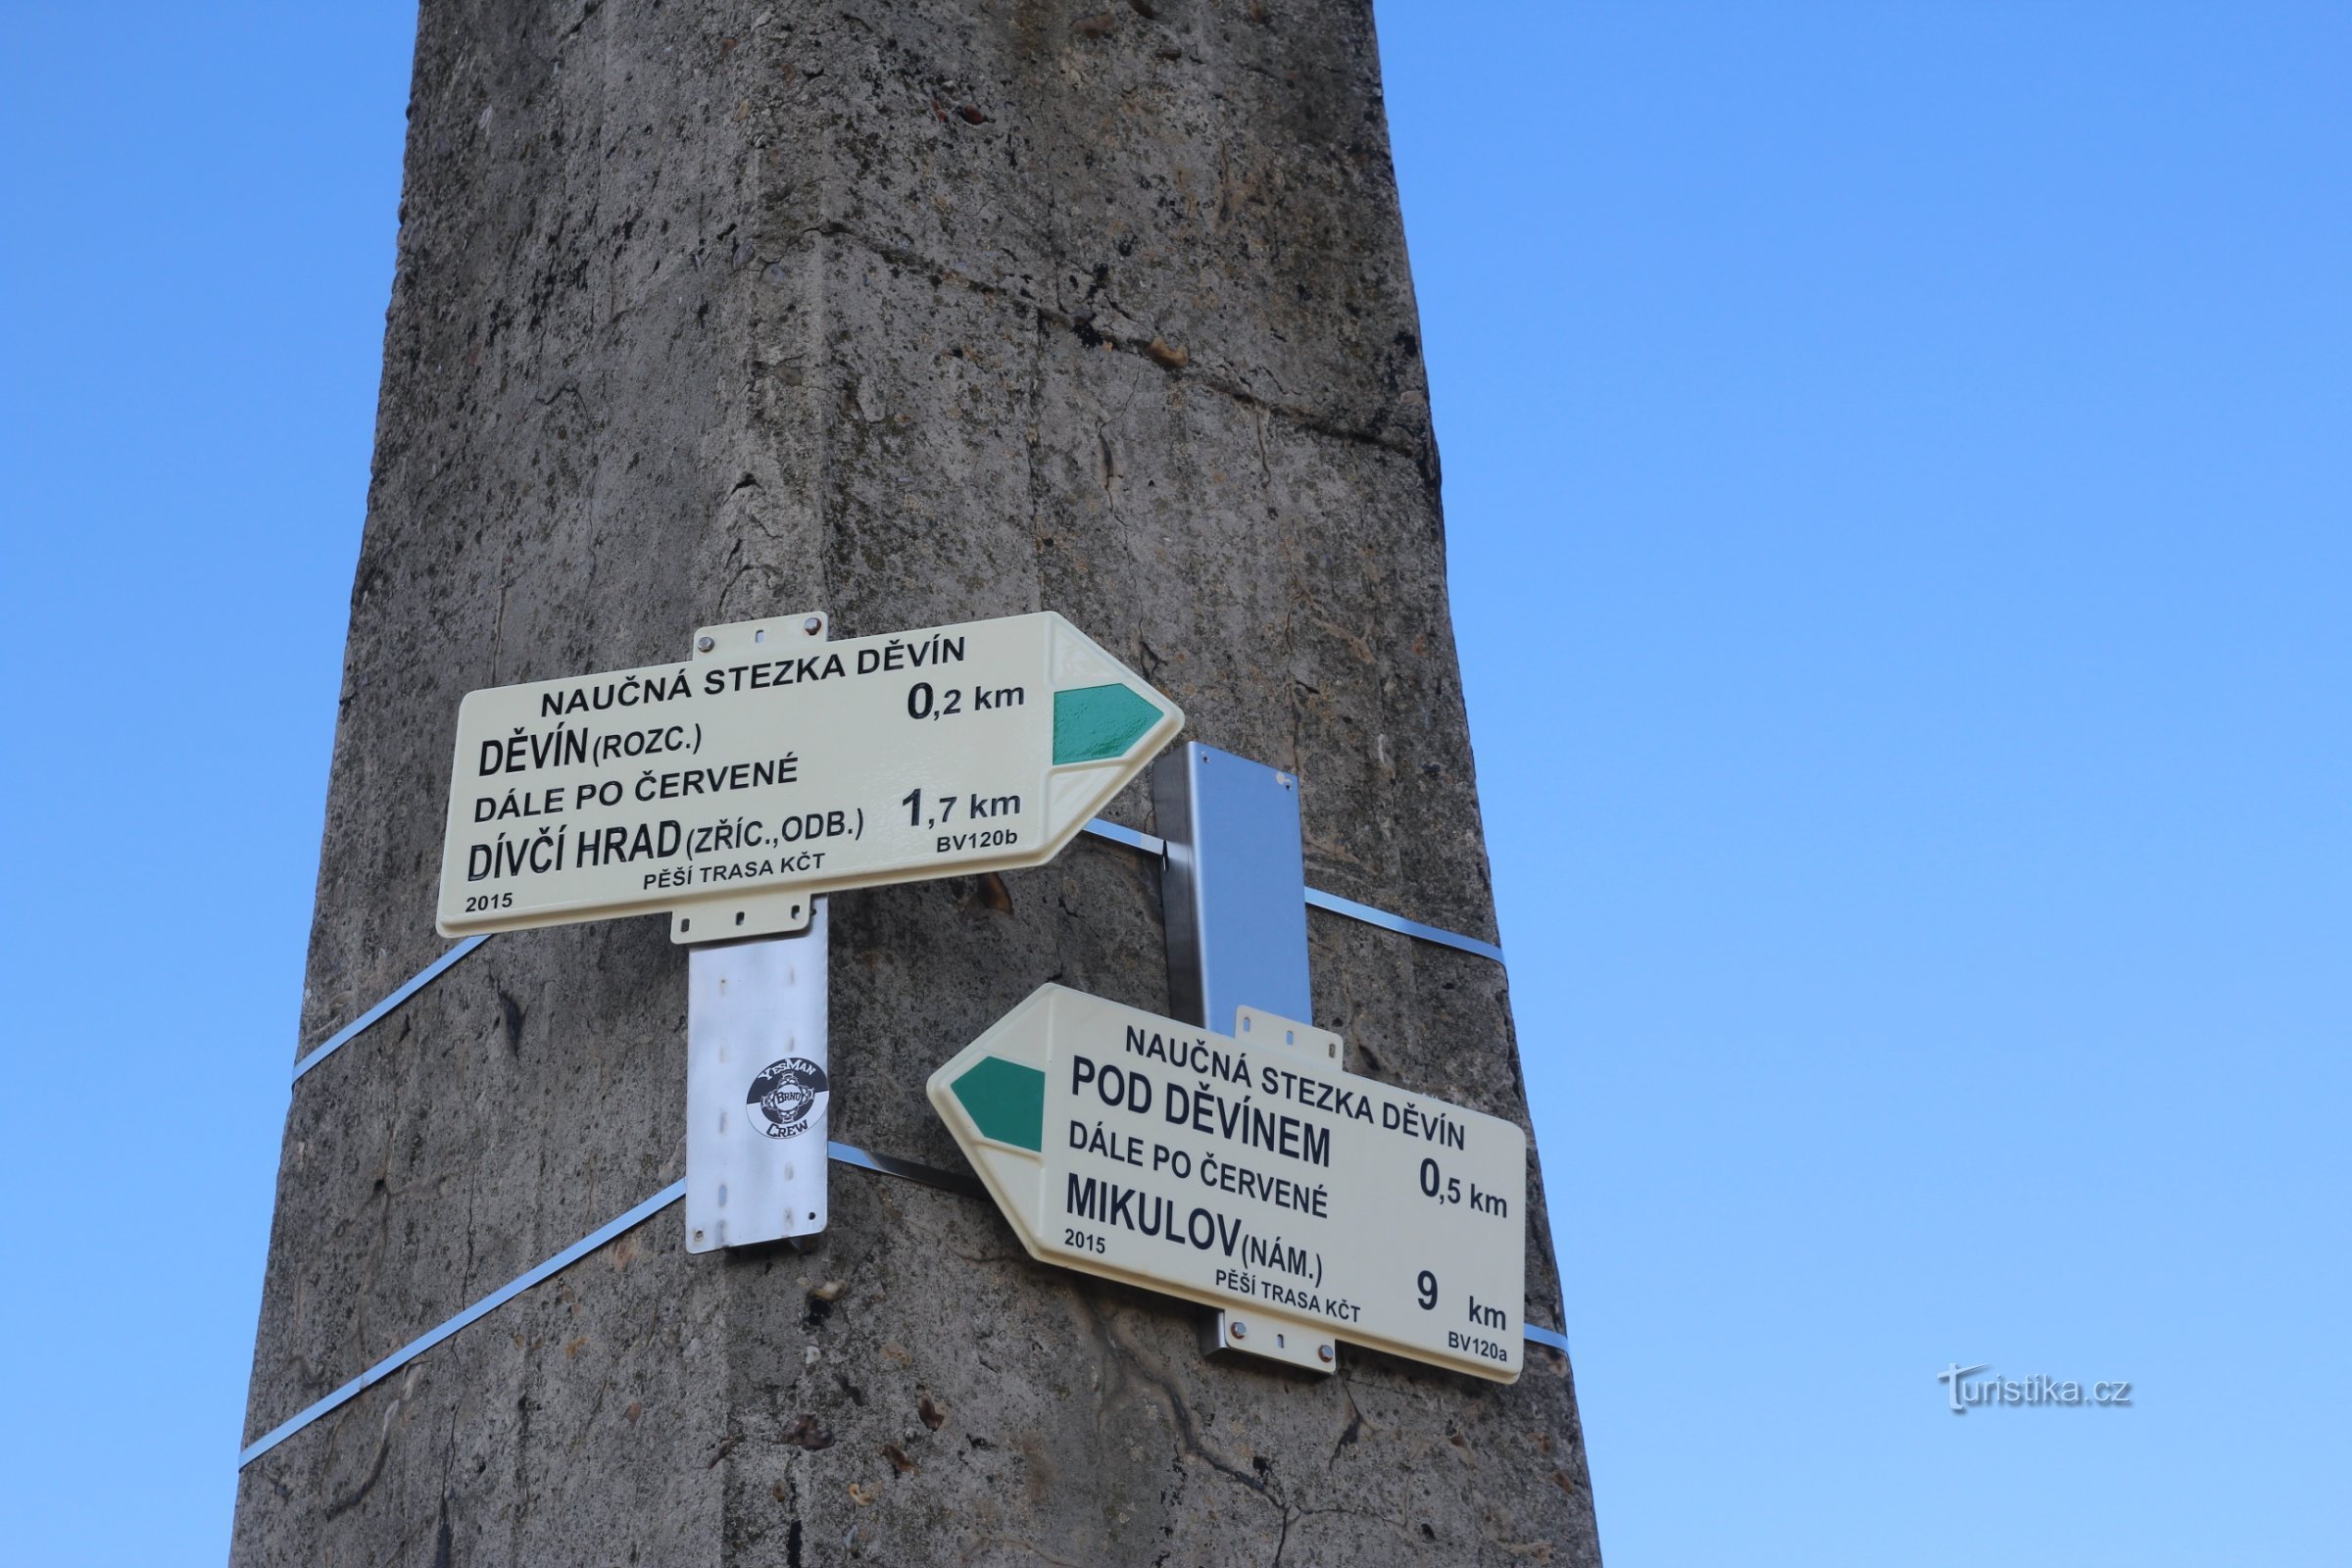 Al pilone di cemento del punto trigonometrico è fissato un cartello turistico